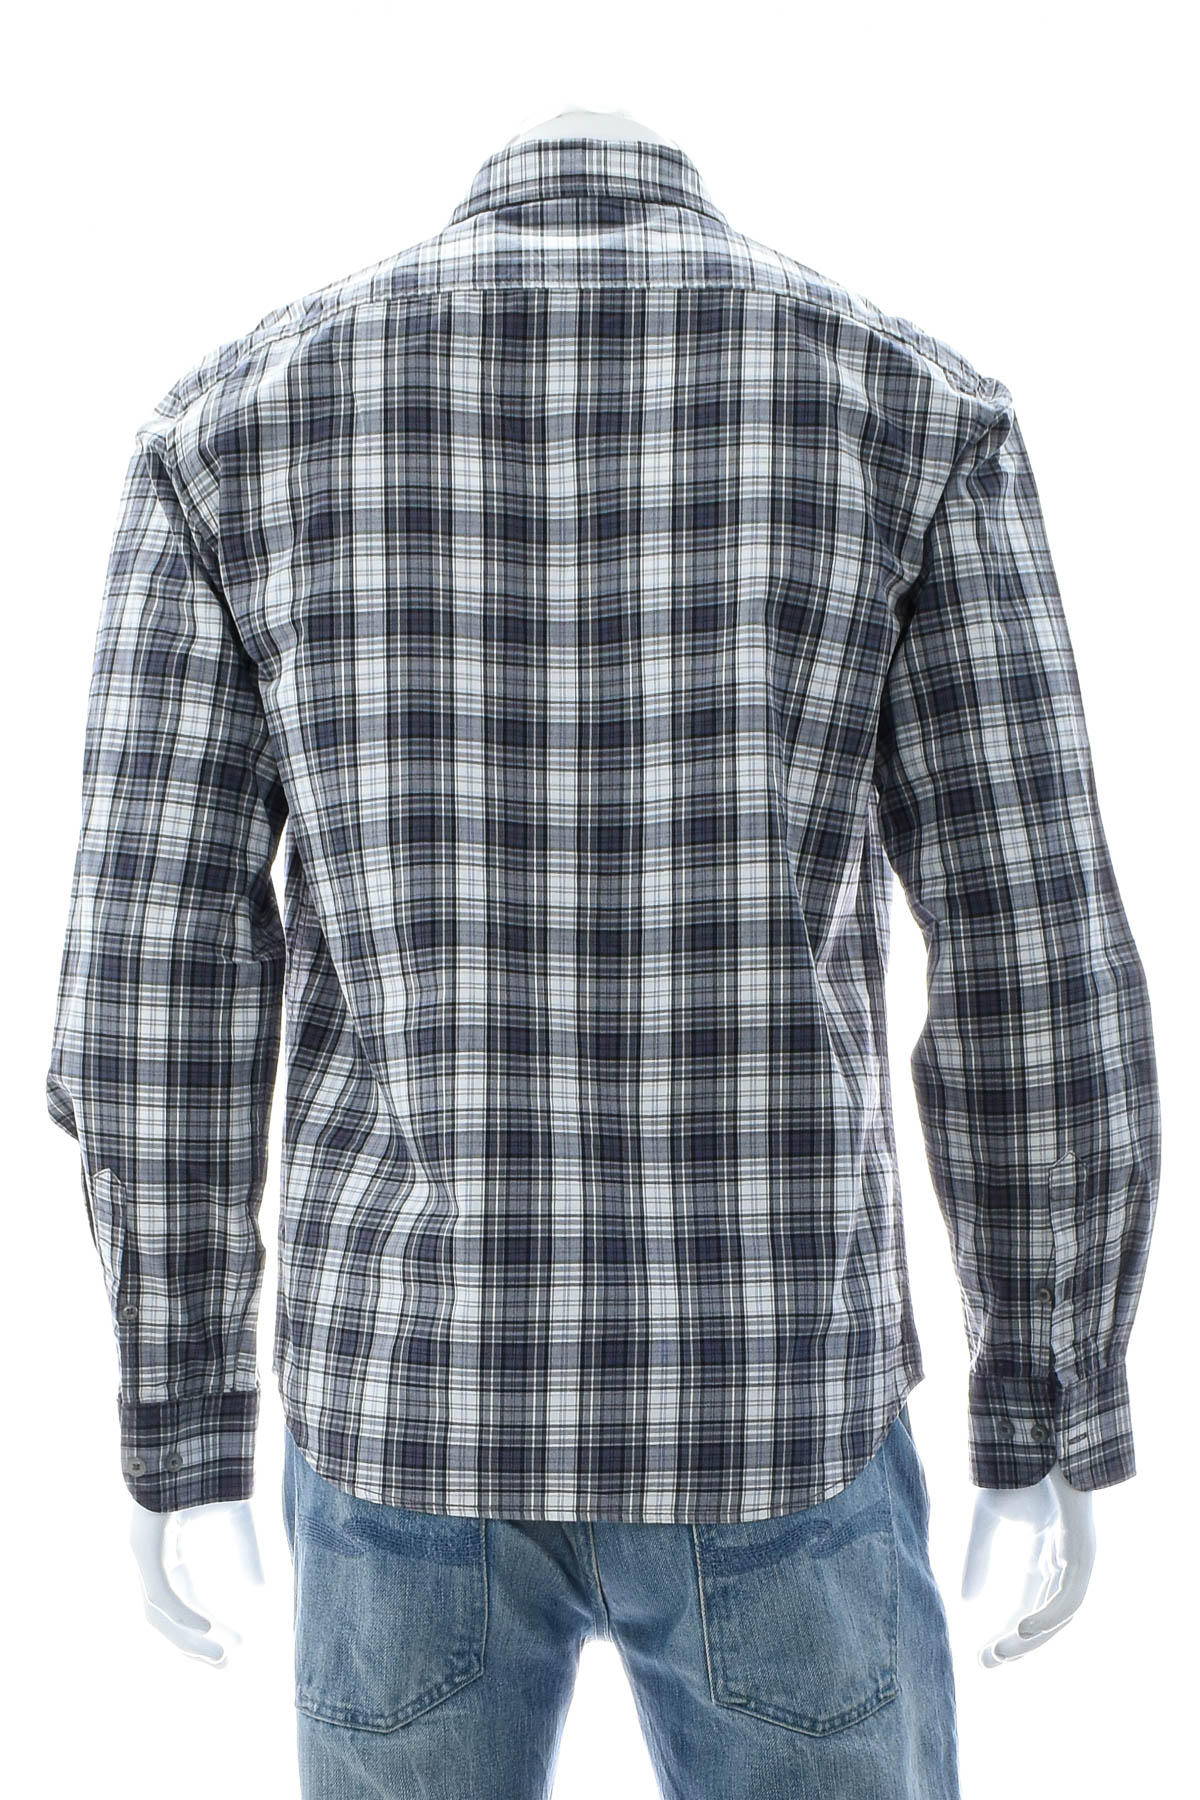 Men's shirt - Watsons - 1